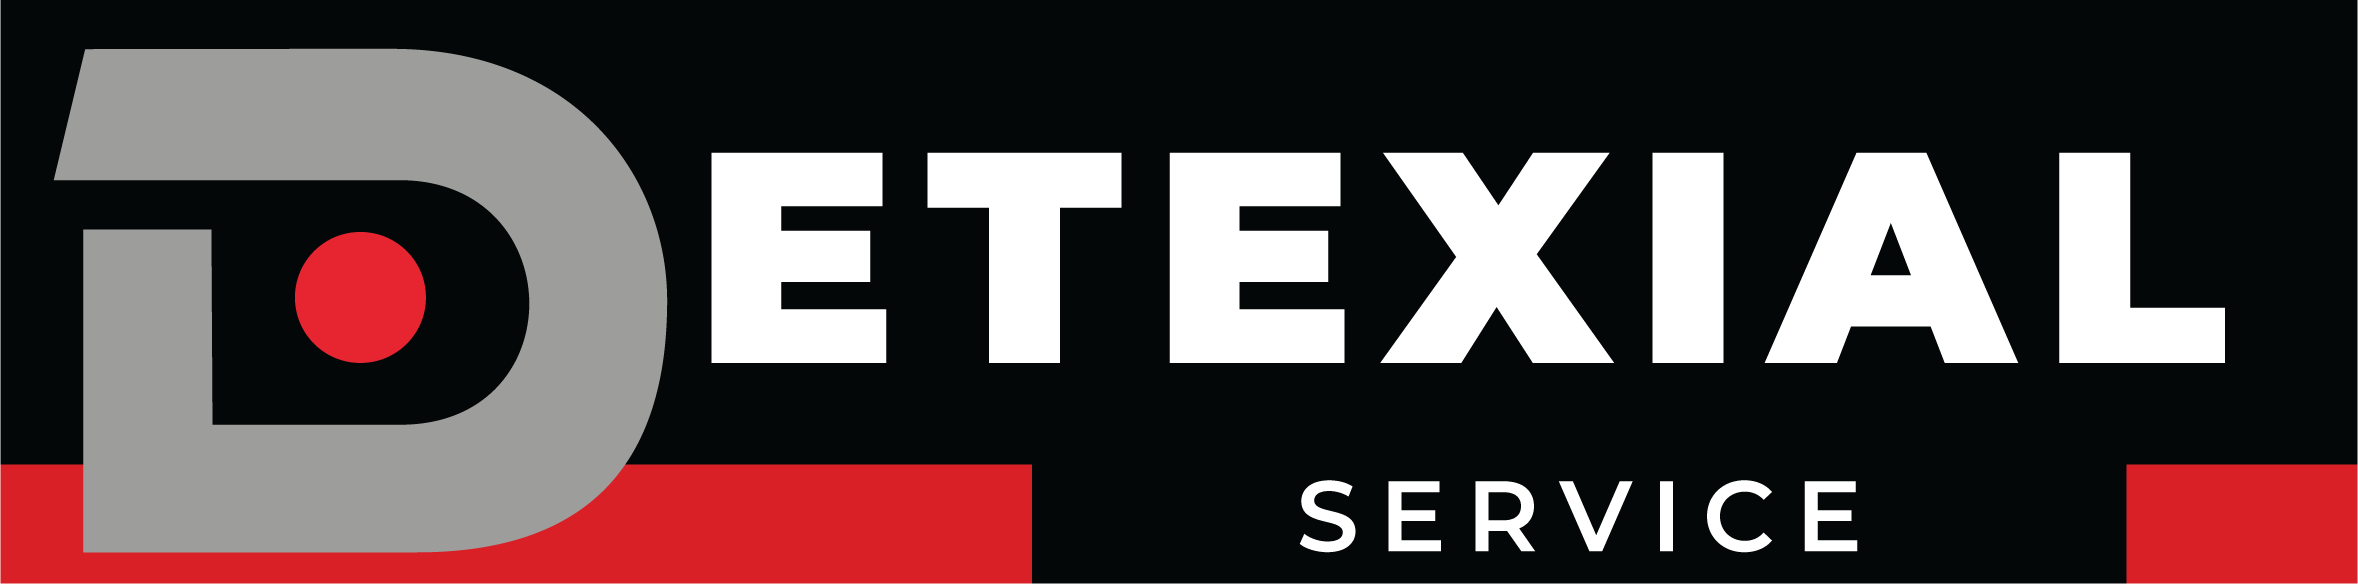 logo de detexial service